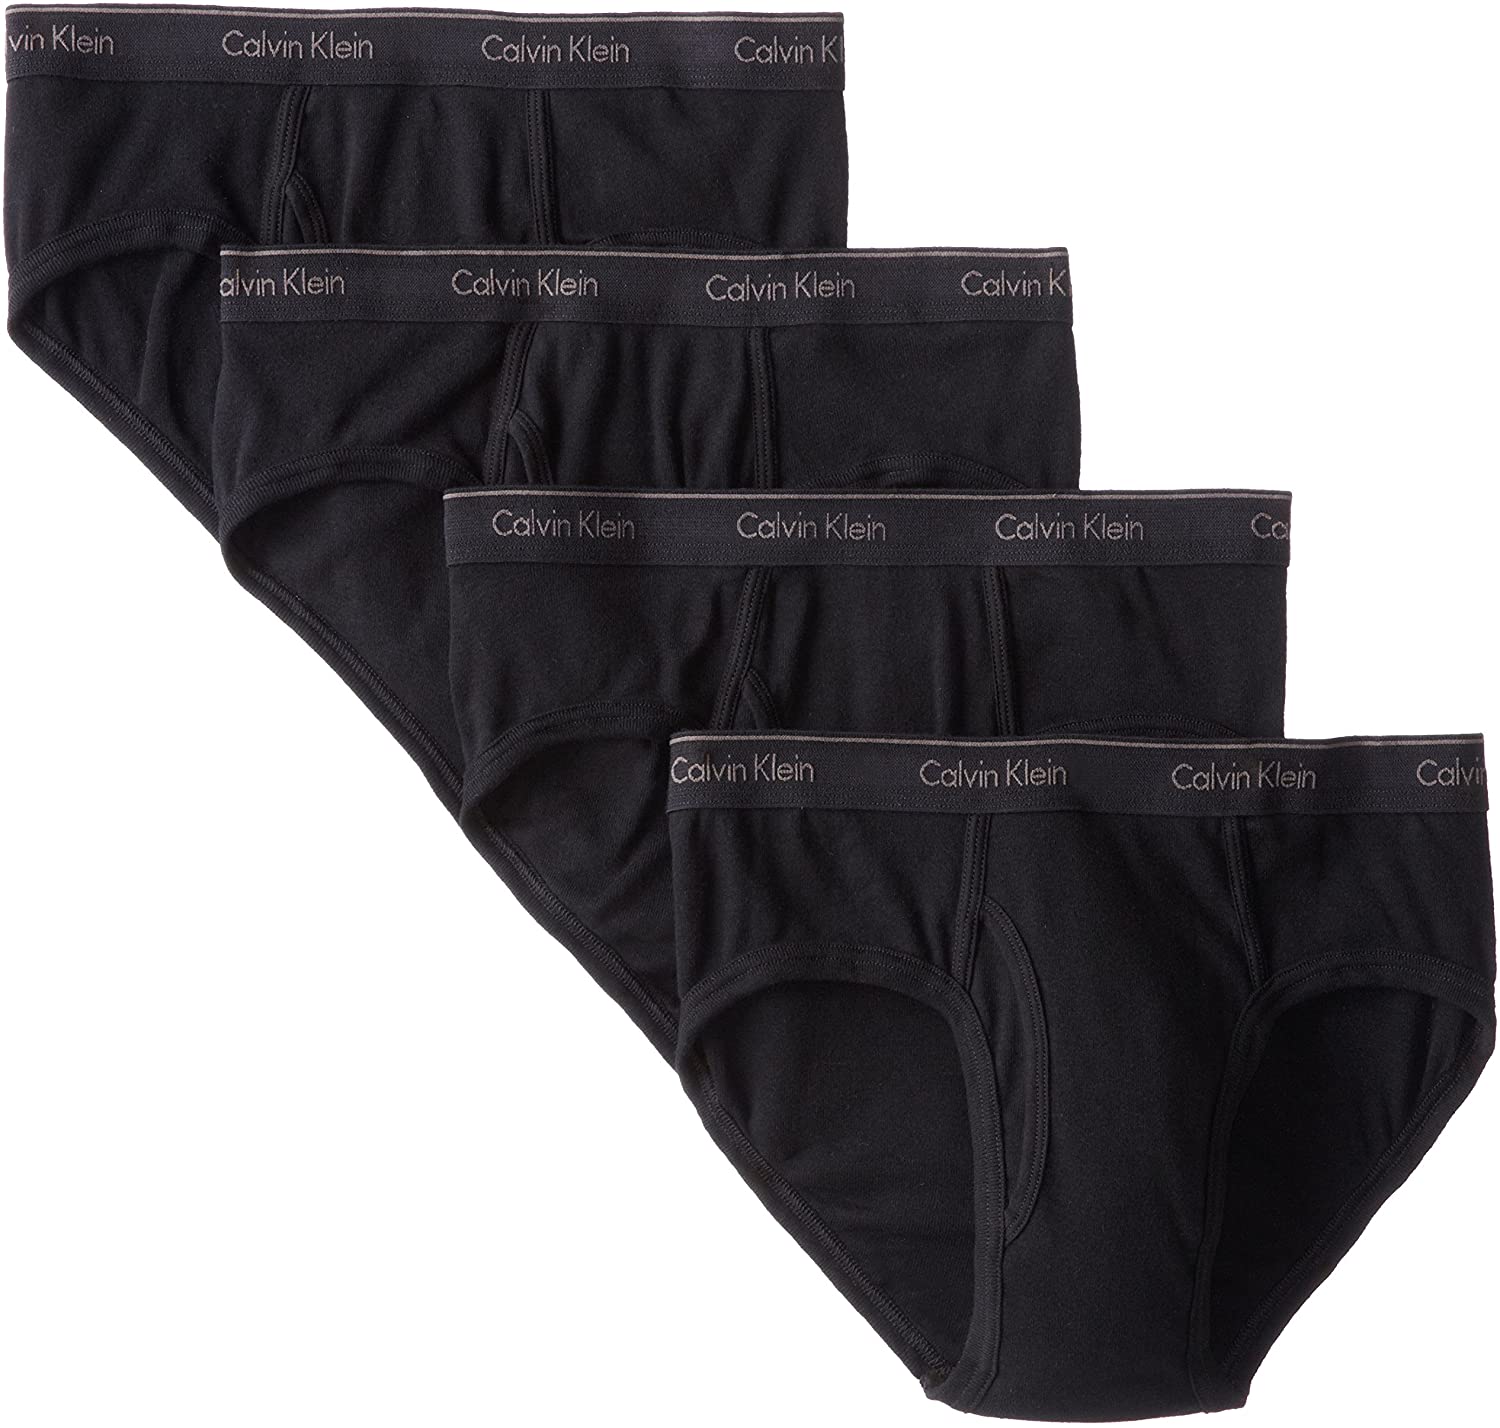 Calvin Klein Low Rise Briefs Men's Cotton Pack Underpants